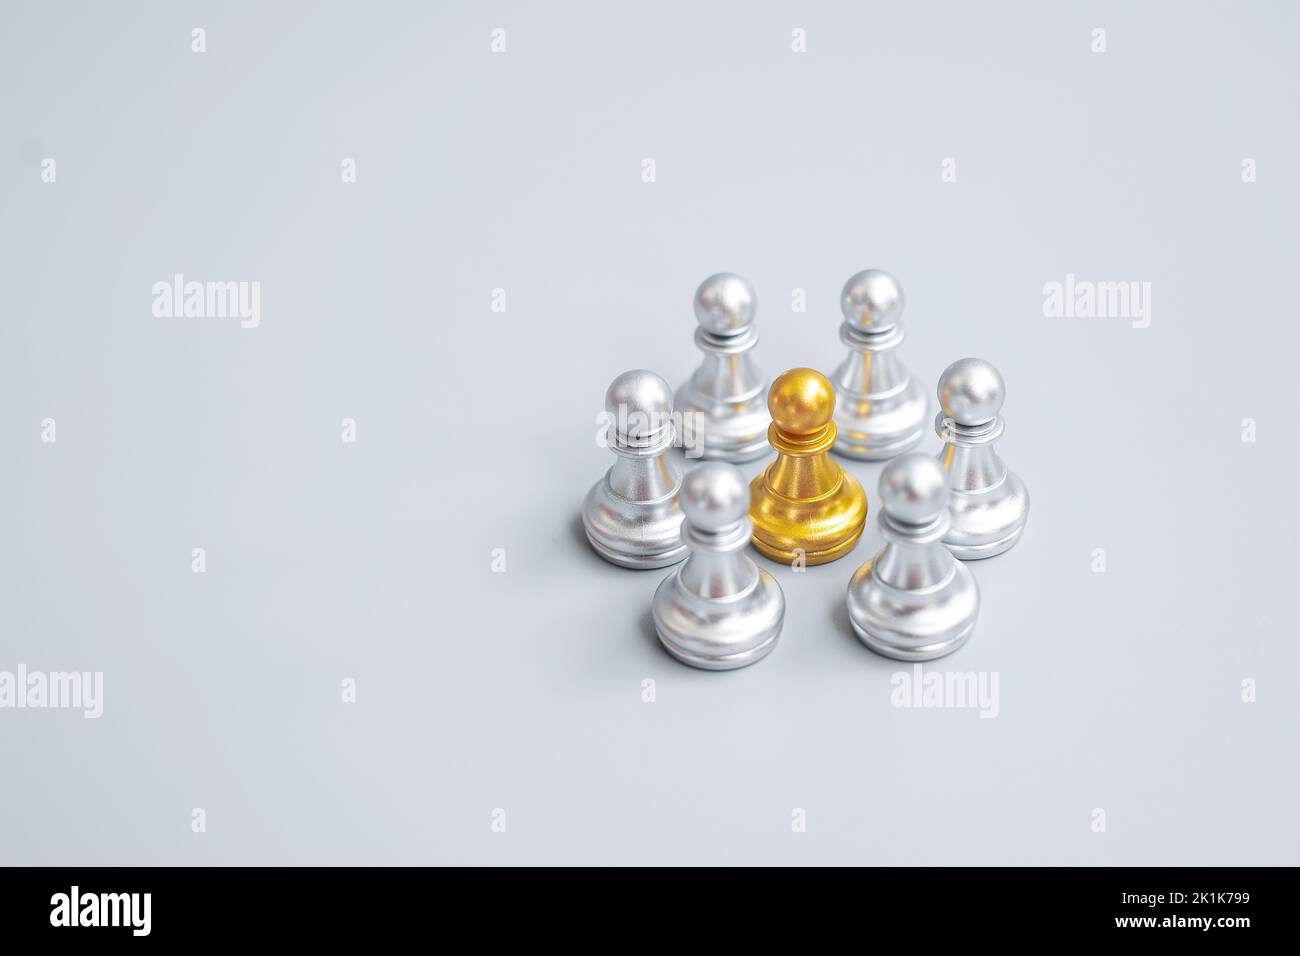 pezzi di pegno degli scacchi d'oro o leader uomo d'affari con cerchio di uomini d'argento. concetto di leadership, business, squadra e lavoro di squadra Foto Stock